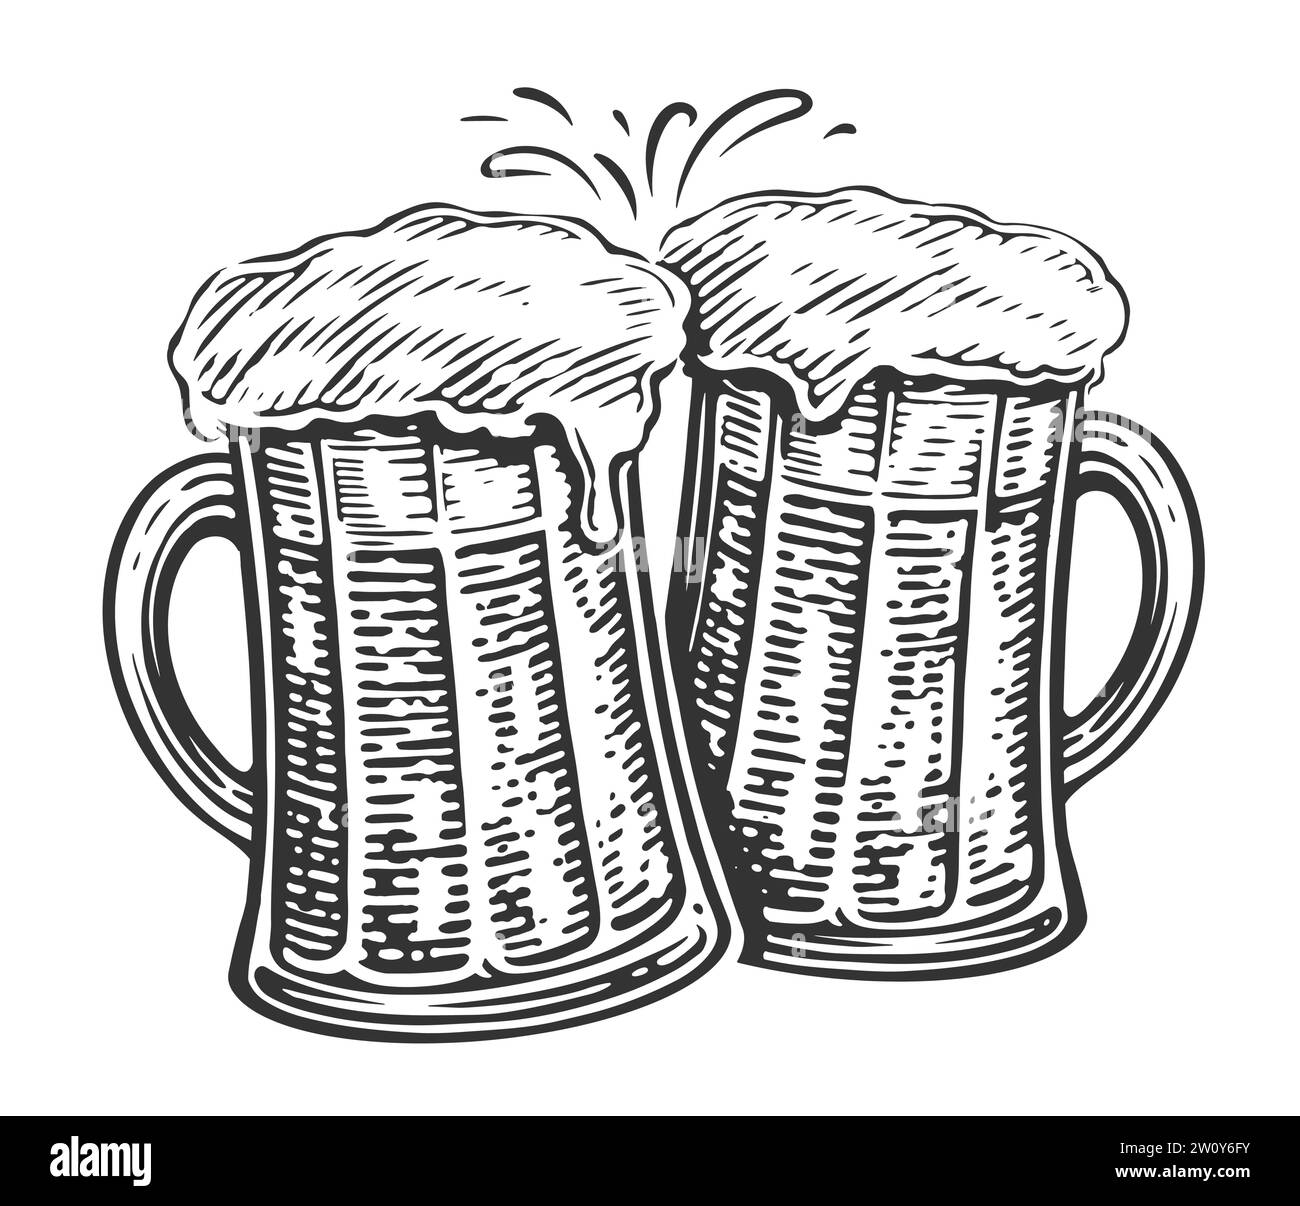 Applaus, zwei Bierbecher Toast. Klirrende Glasgläser voller Bier und Schaum, Illustration Stock Vektor